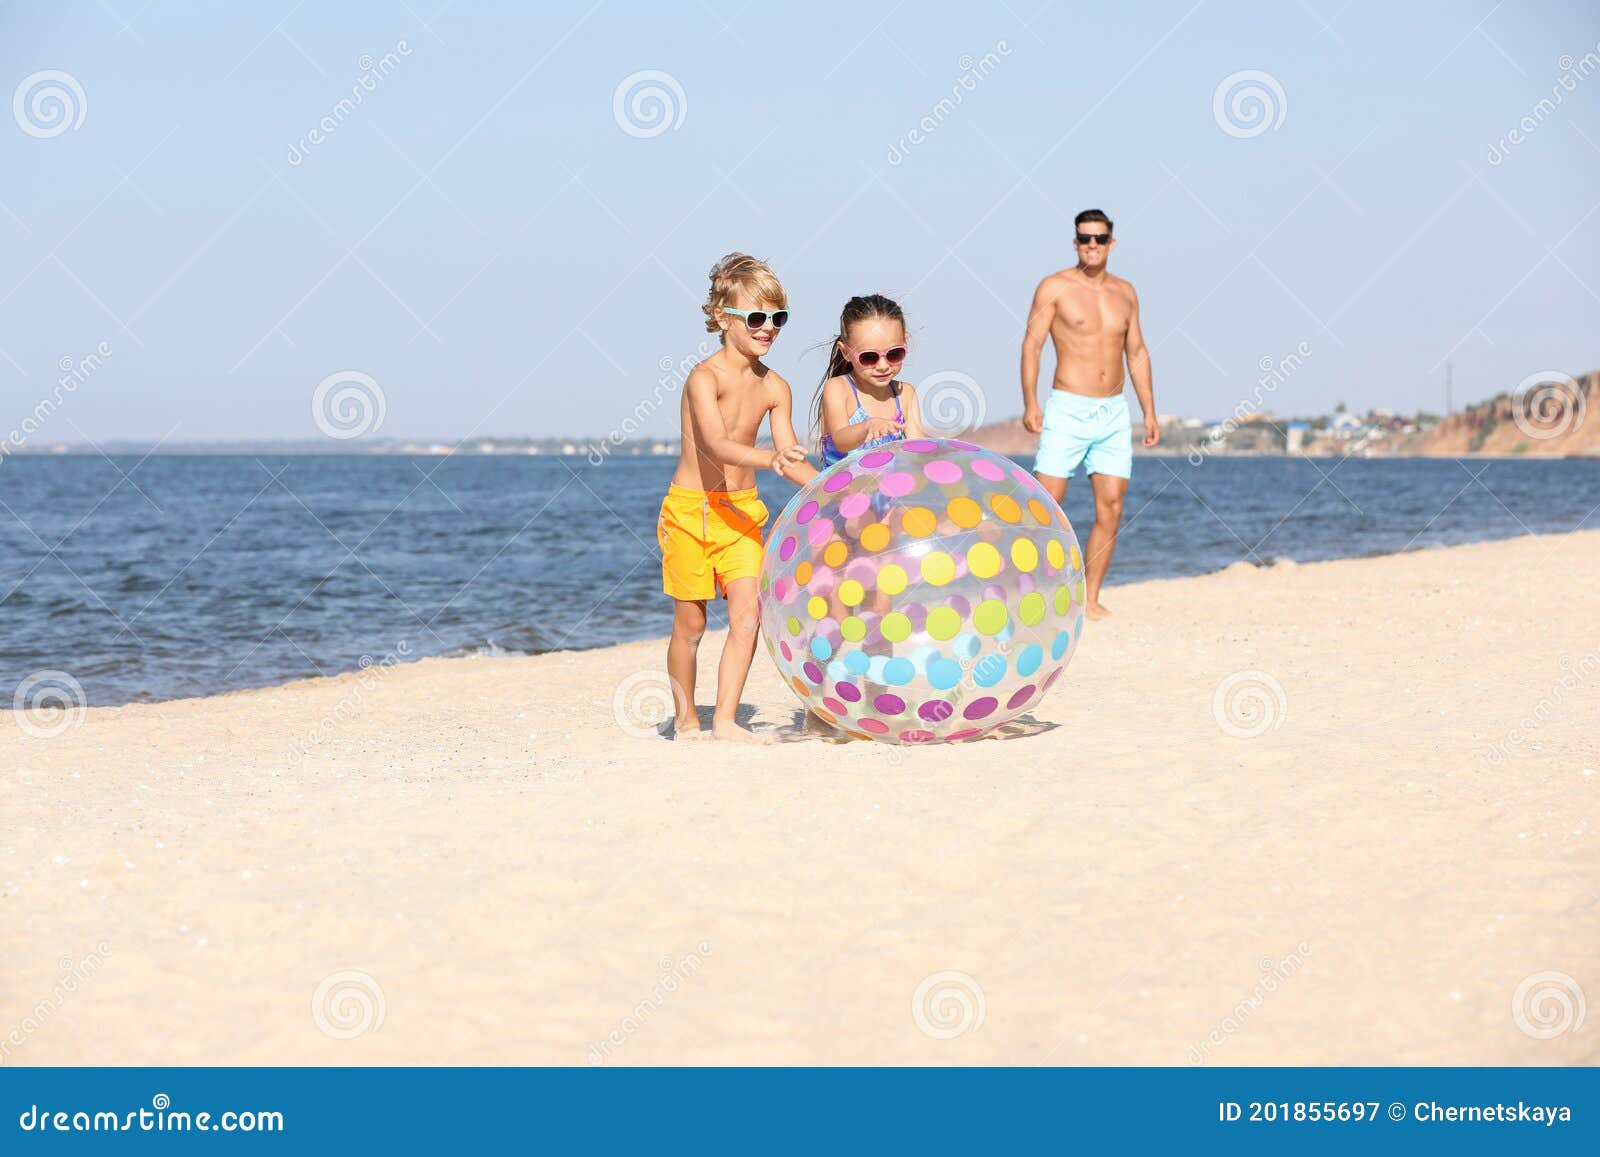 Ballon gonflable pour la plage